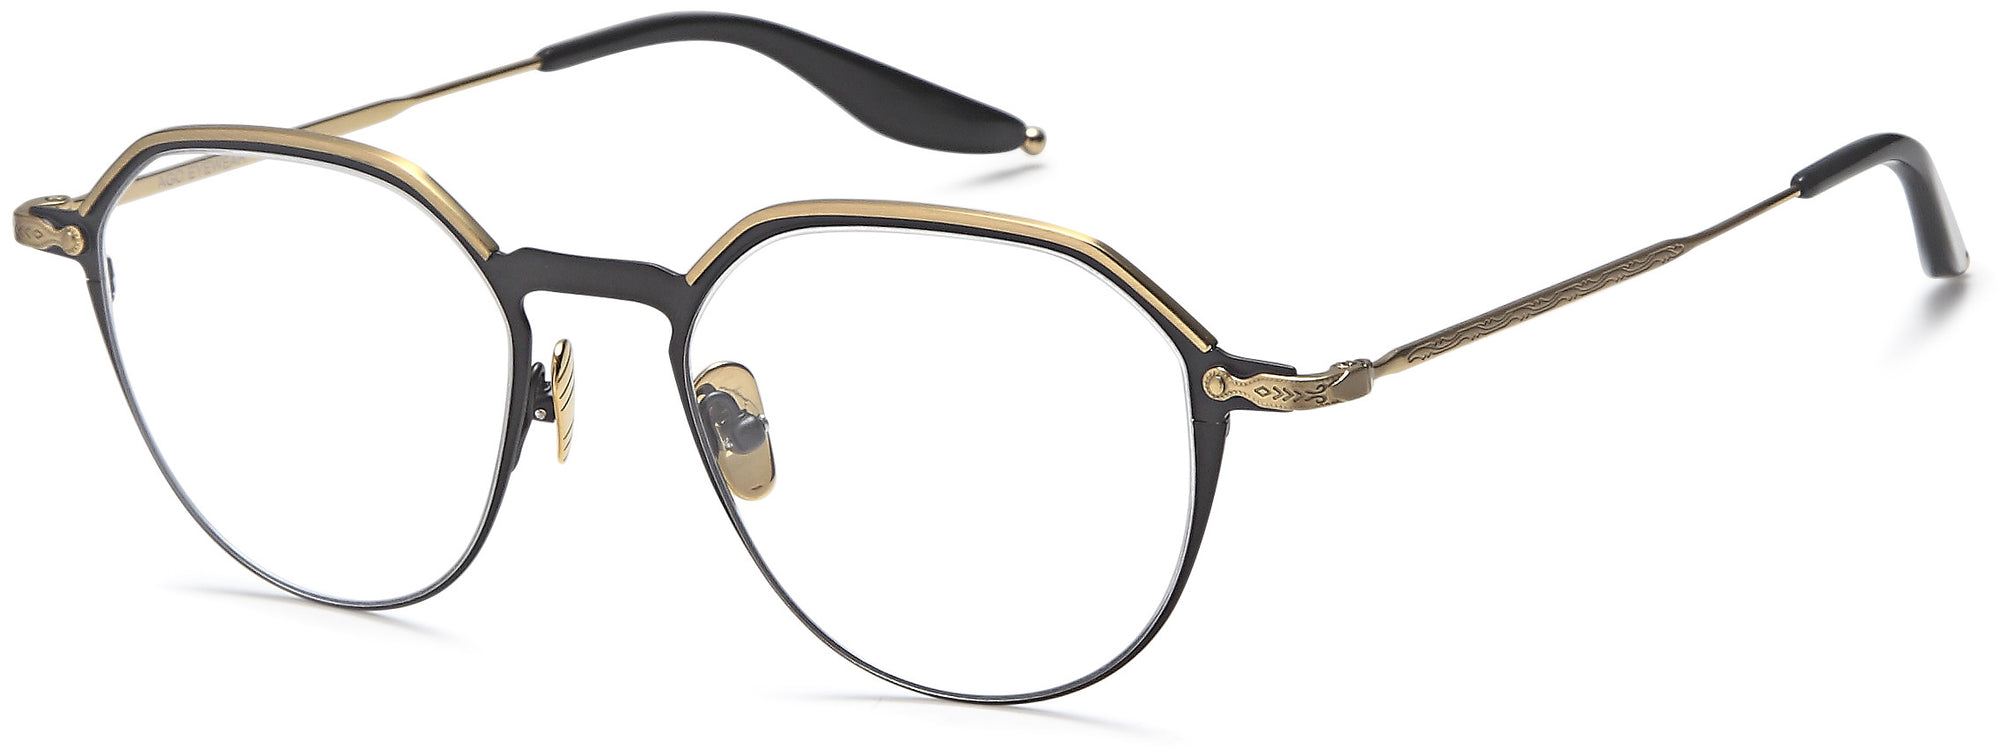 AGO Eyeglasses AGOT702 - Go-Readers.com